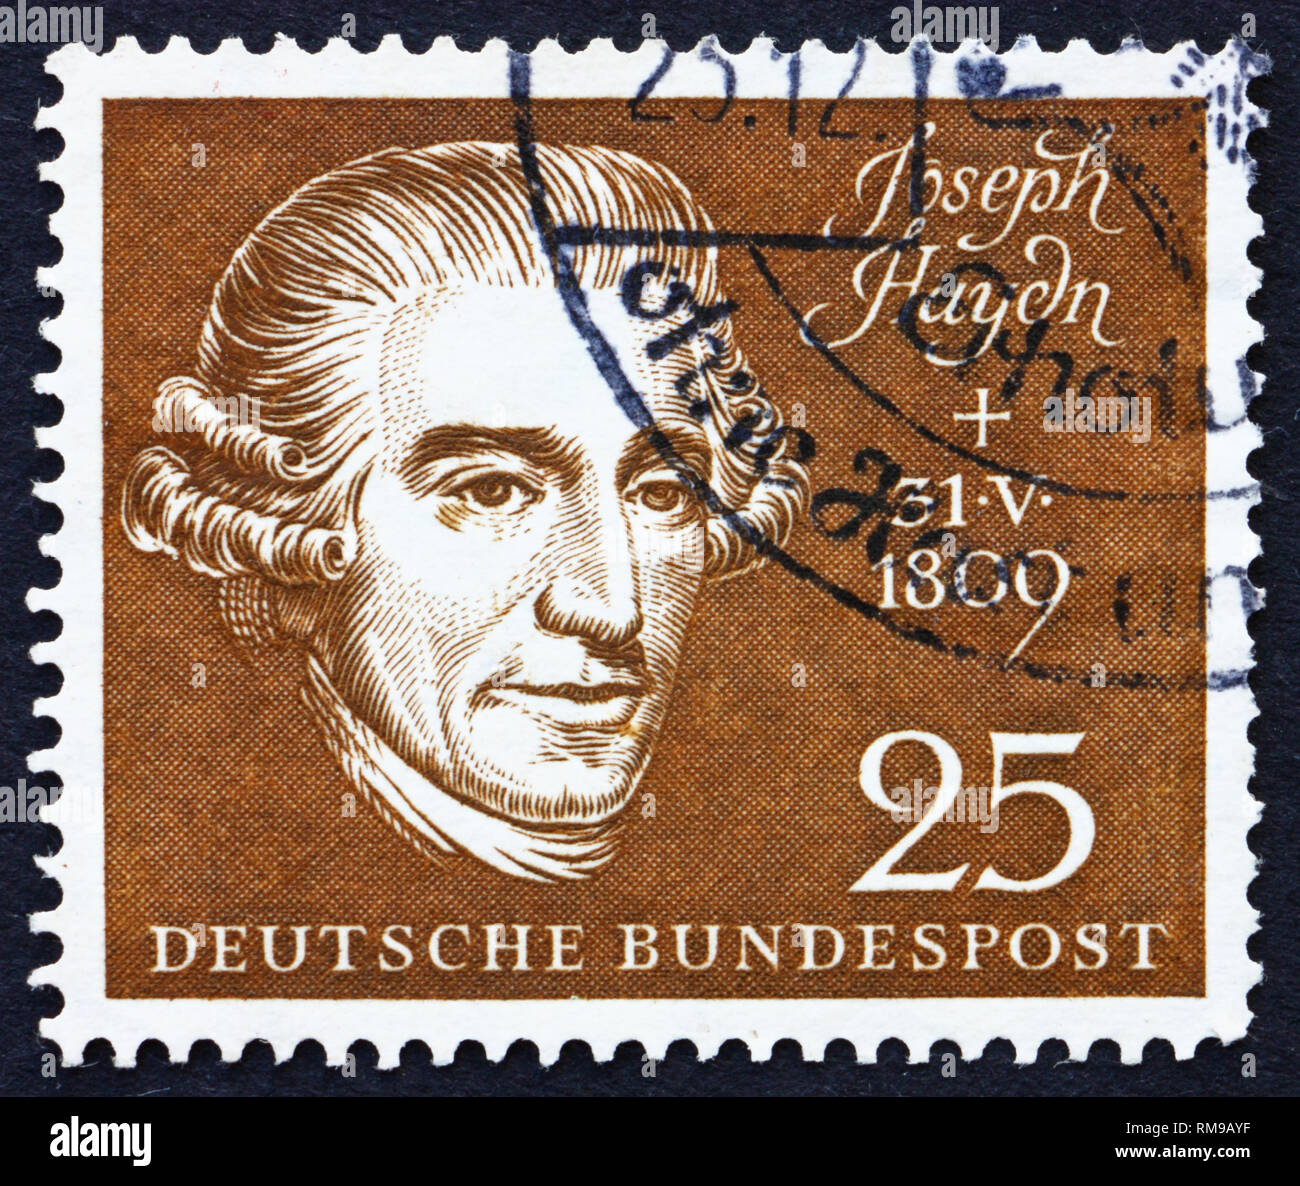 Germania - circa 1959: un timbro stampato in Germania mostra Joseph Haydn, compositore, circa 1959 Foto Stock